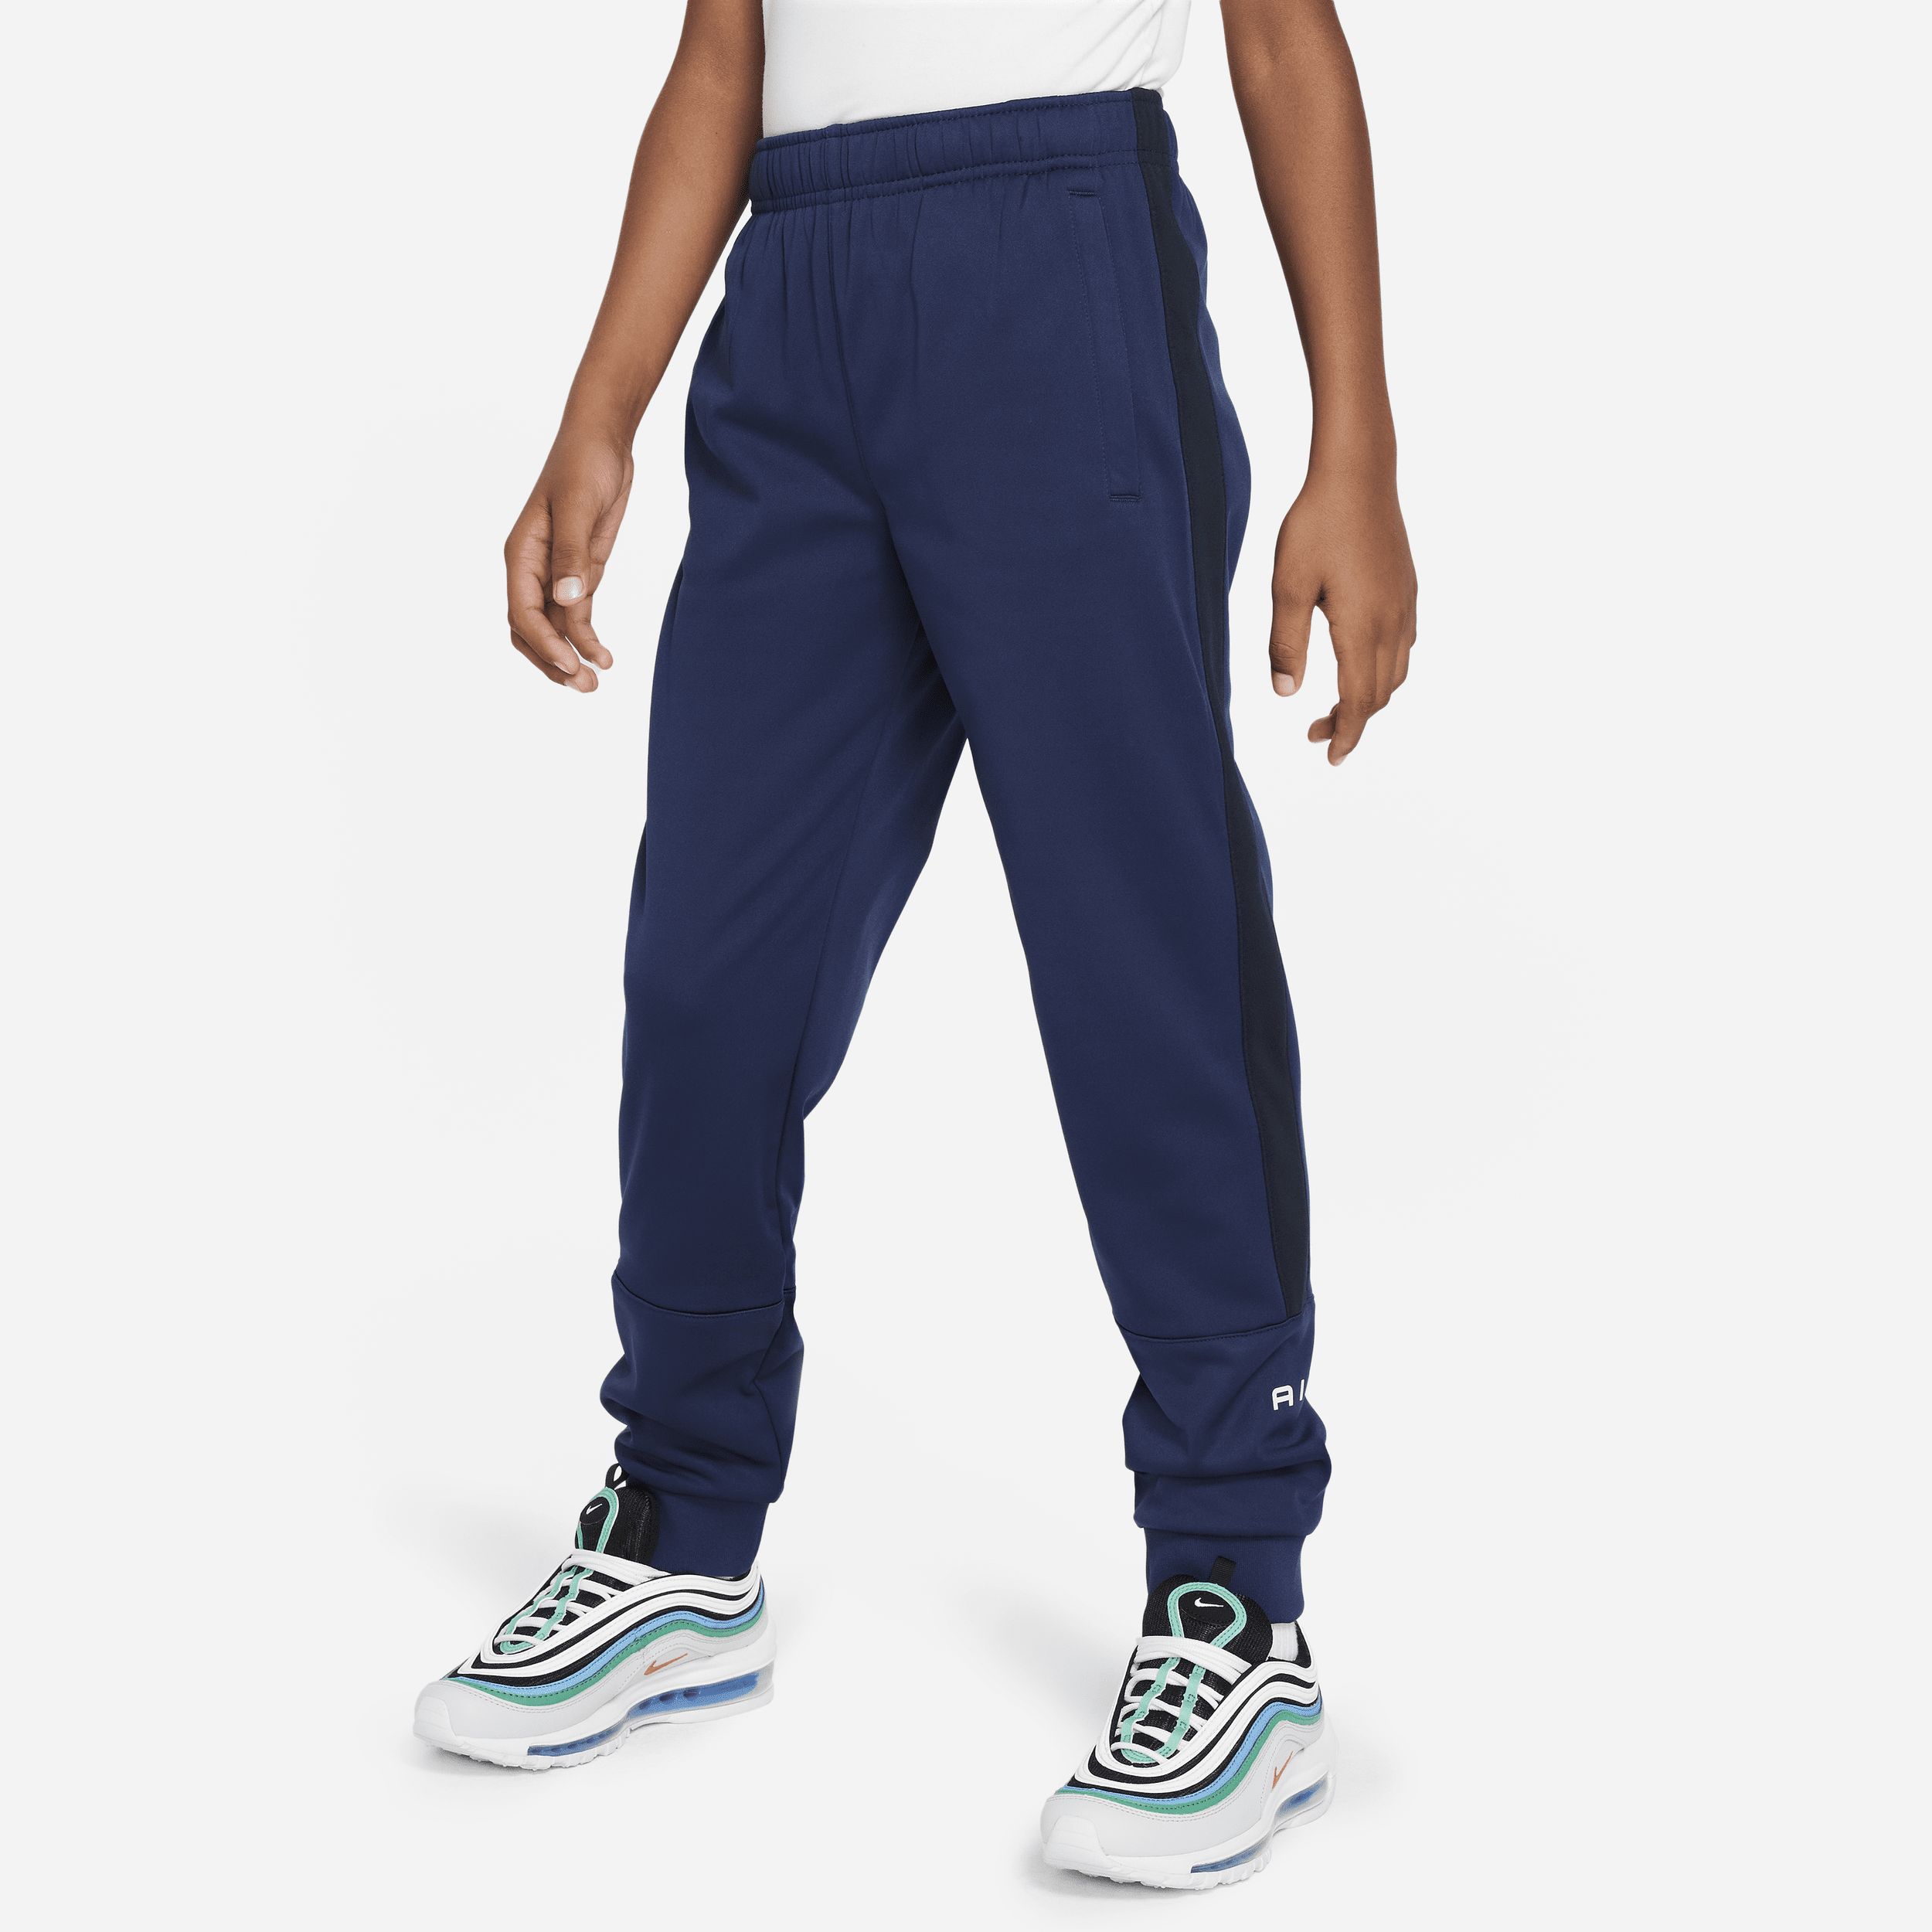 Nike Air joggingbroek voor jongens - Blauw